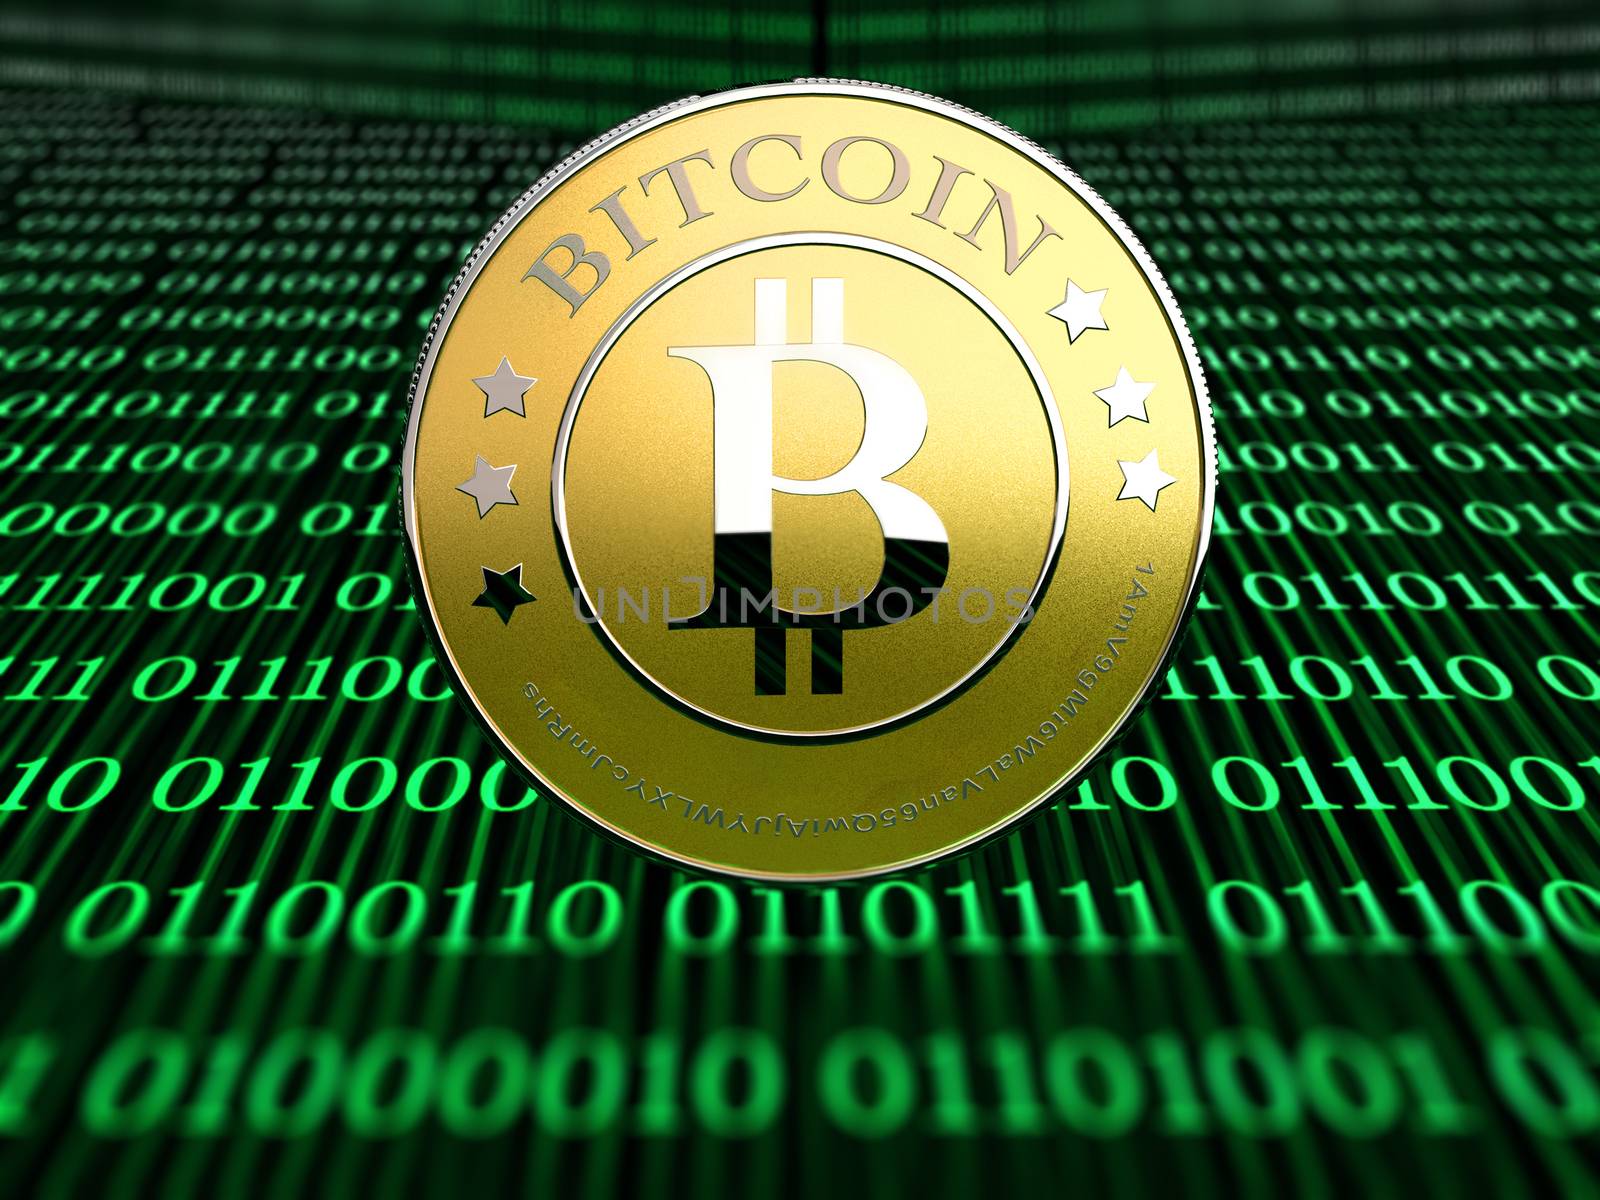 a bitcoin - the new virtual money